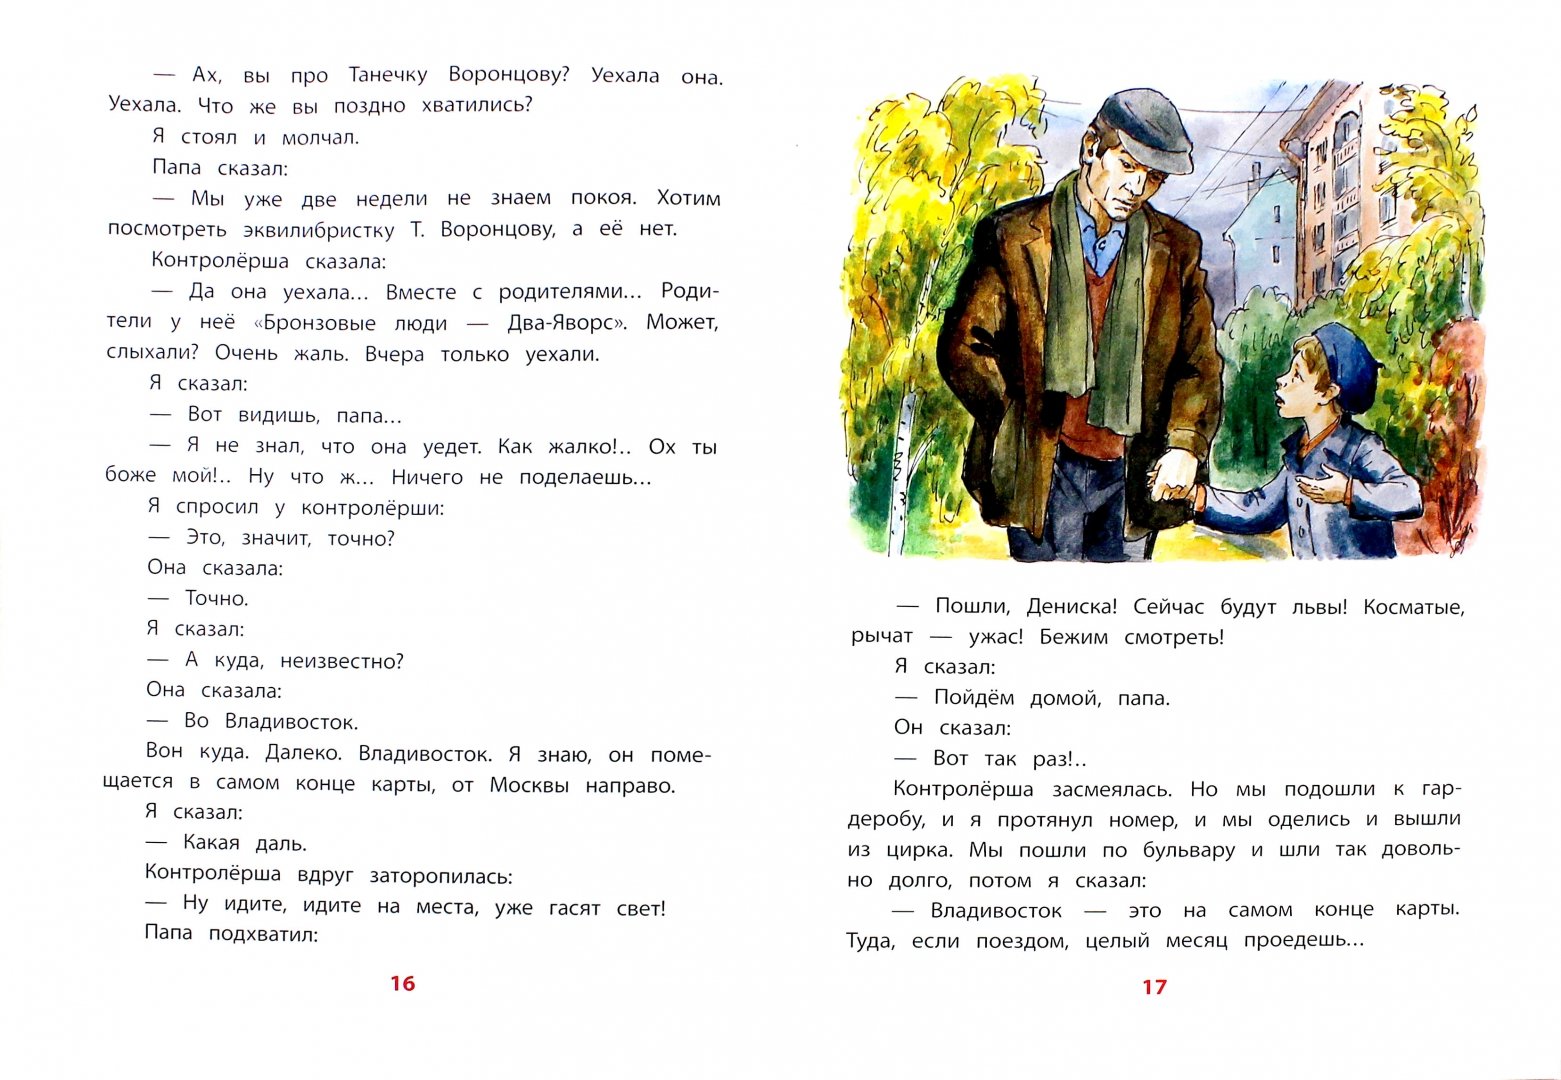 Иллюстрация 1 из 17 для Девочка на шаре: рассказы - Виктор Драгунский | Лабиринт - книги. Источник: Лабиринт